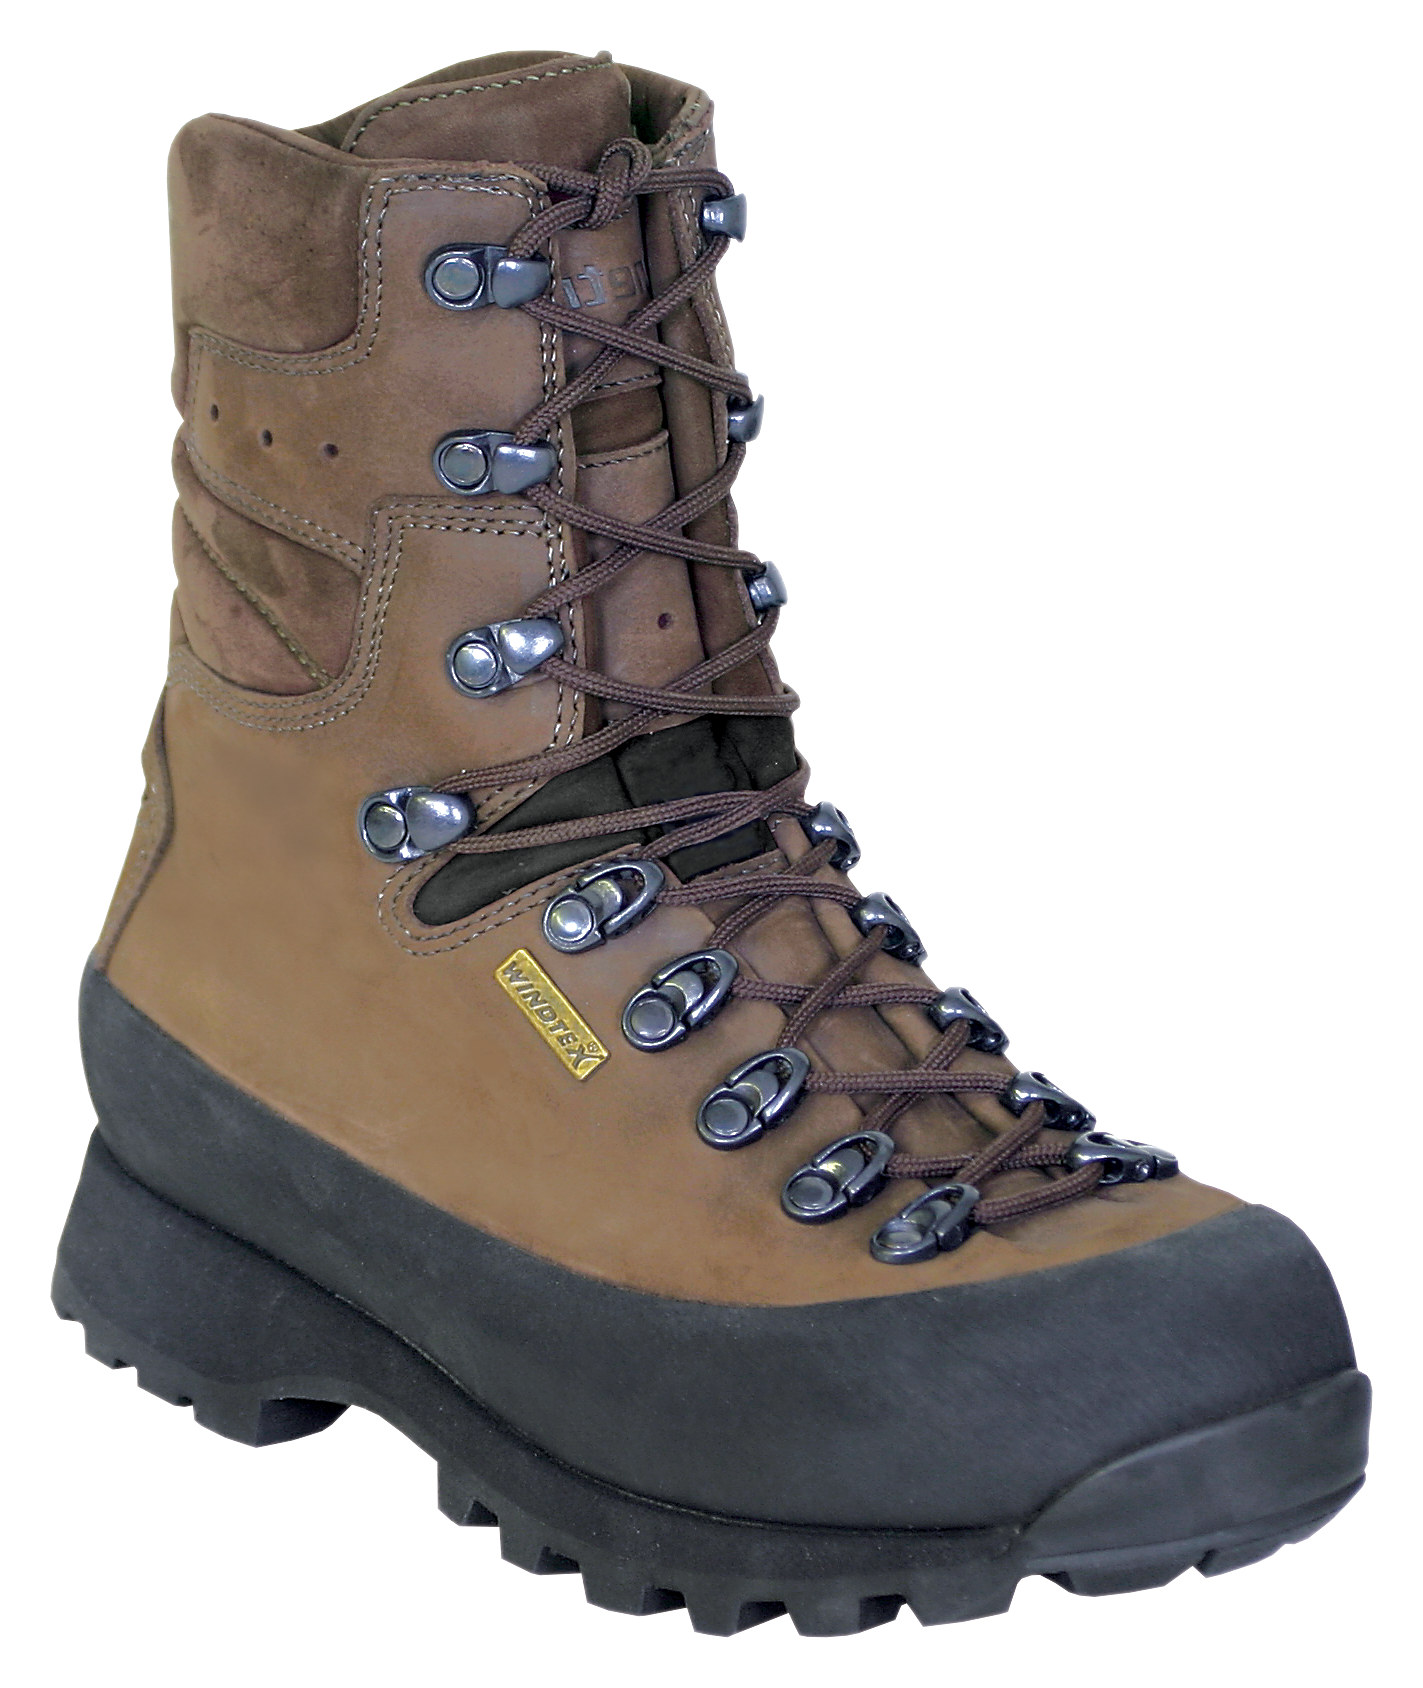 Kenetrek Hiker Waterproof Hiking Boots for Ladies - Brown -  10 5M